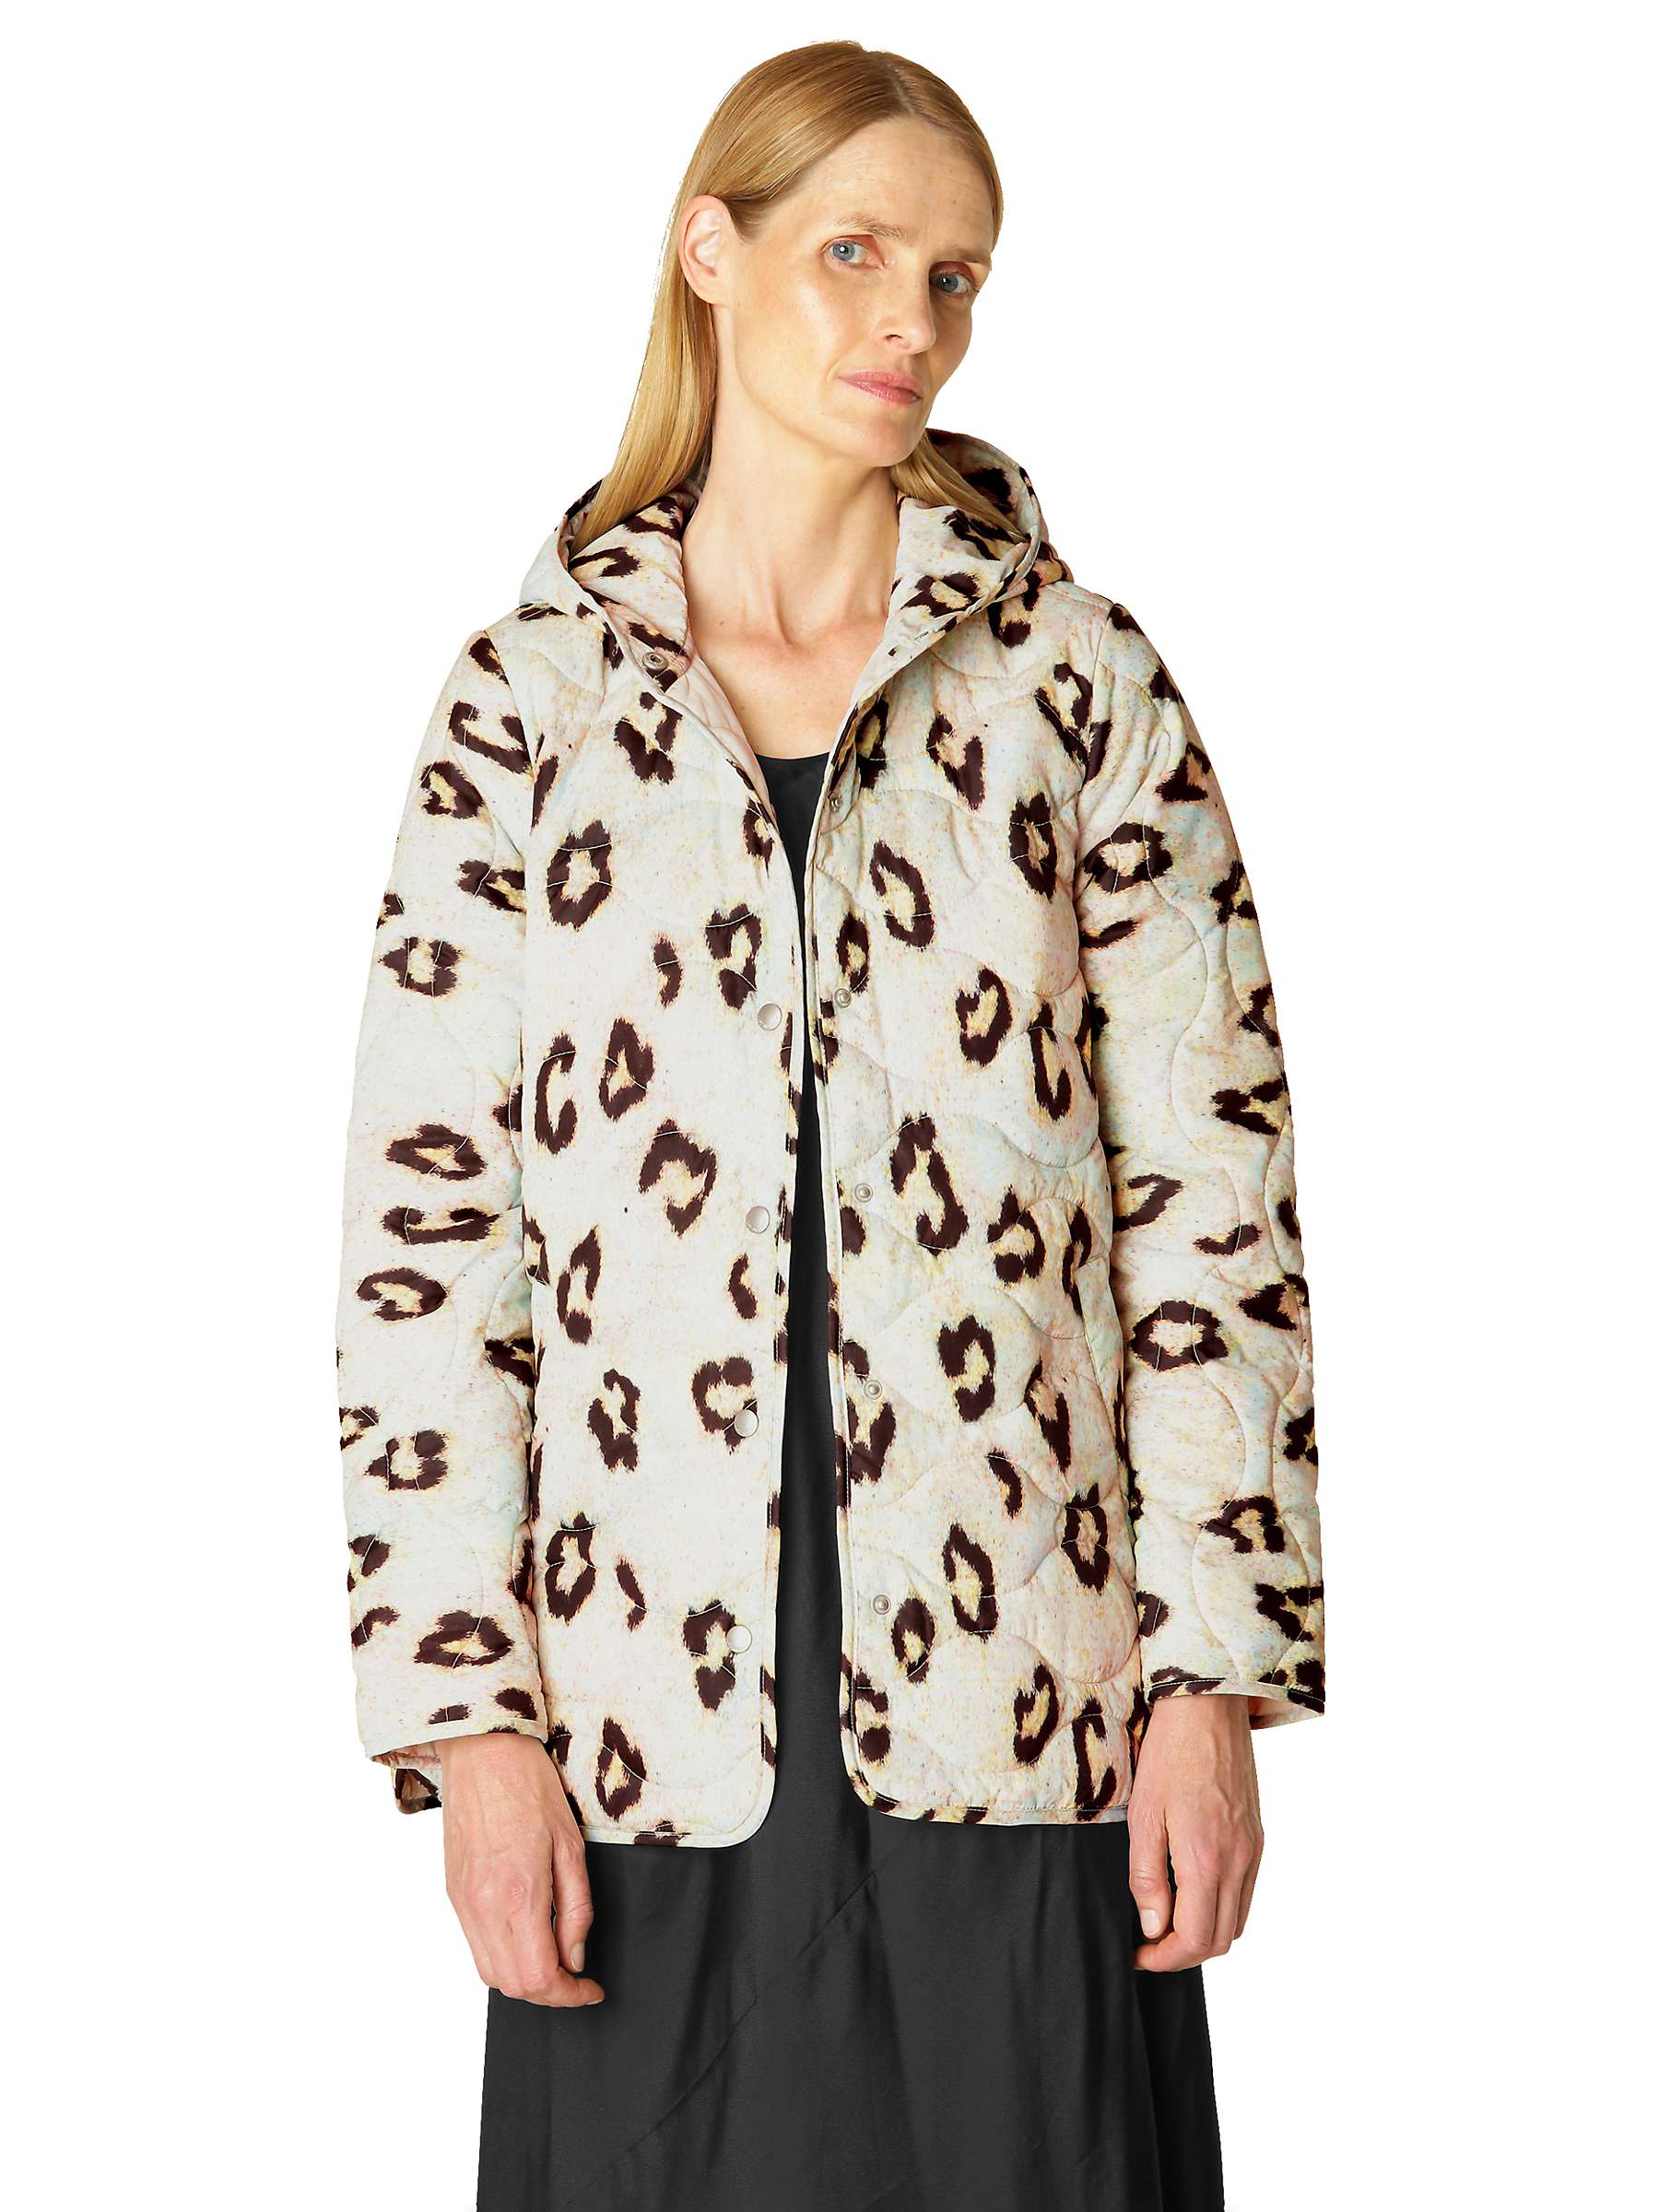 Buy Ilse Jacobsen Hornbæk Leopard Print Quilted Hooded Jacket, Multi Online at johnlewis.com